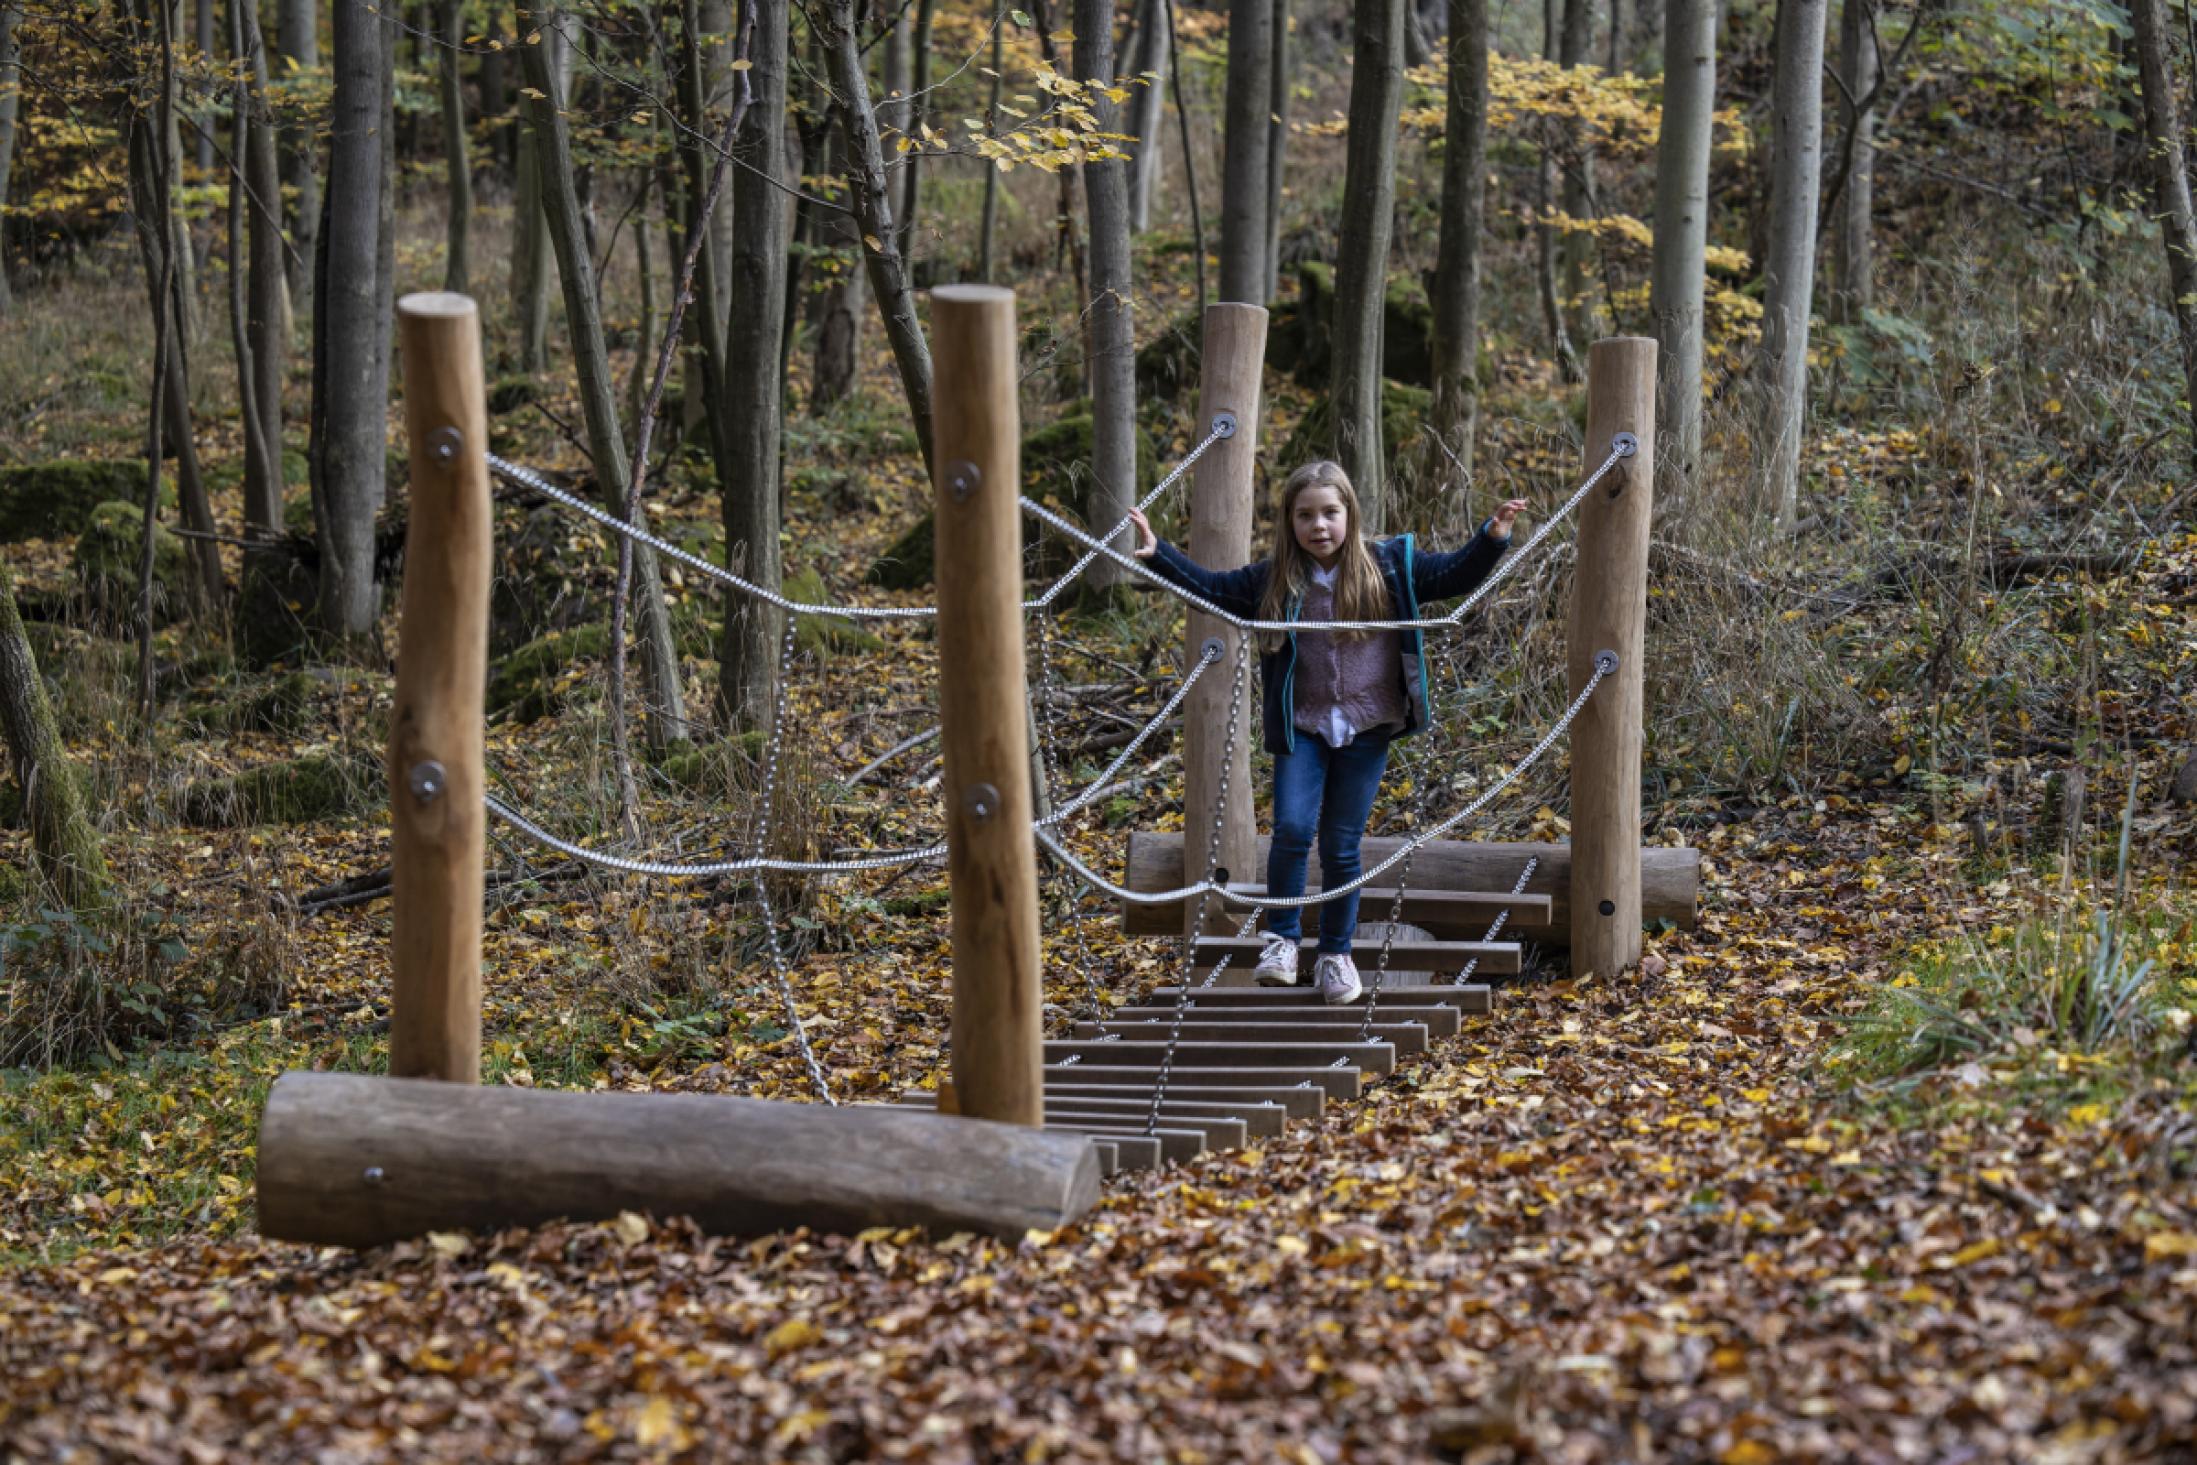 Holzspielgeräte erwarten dich im Wald © Holger Leue